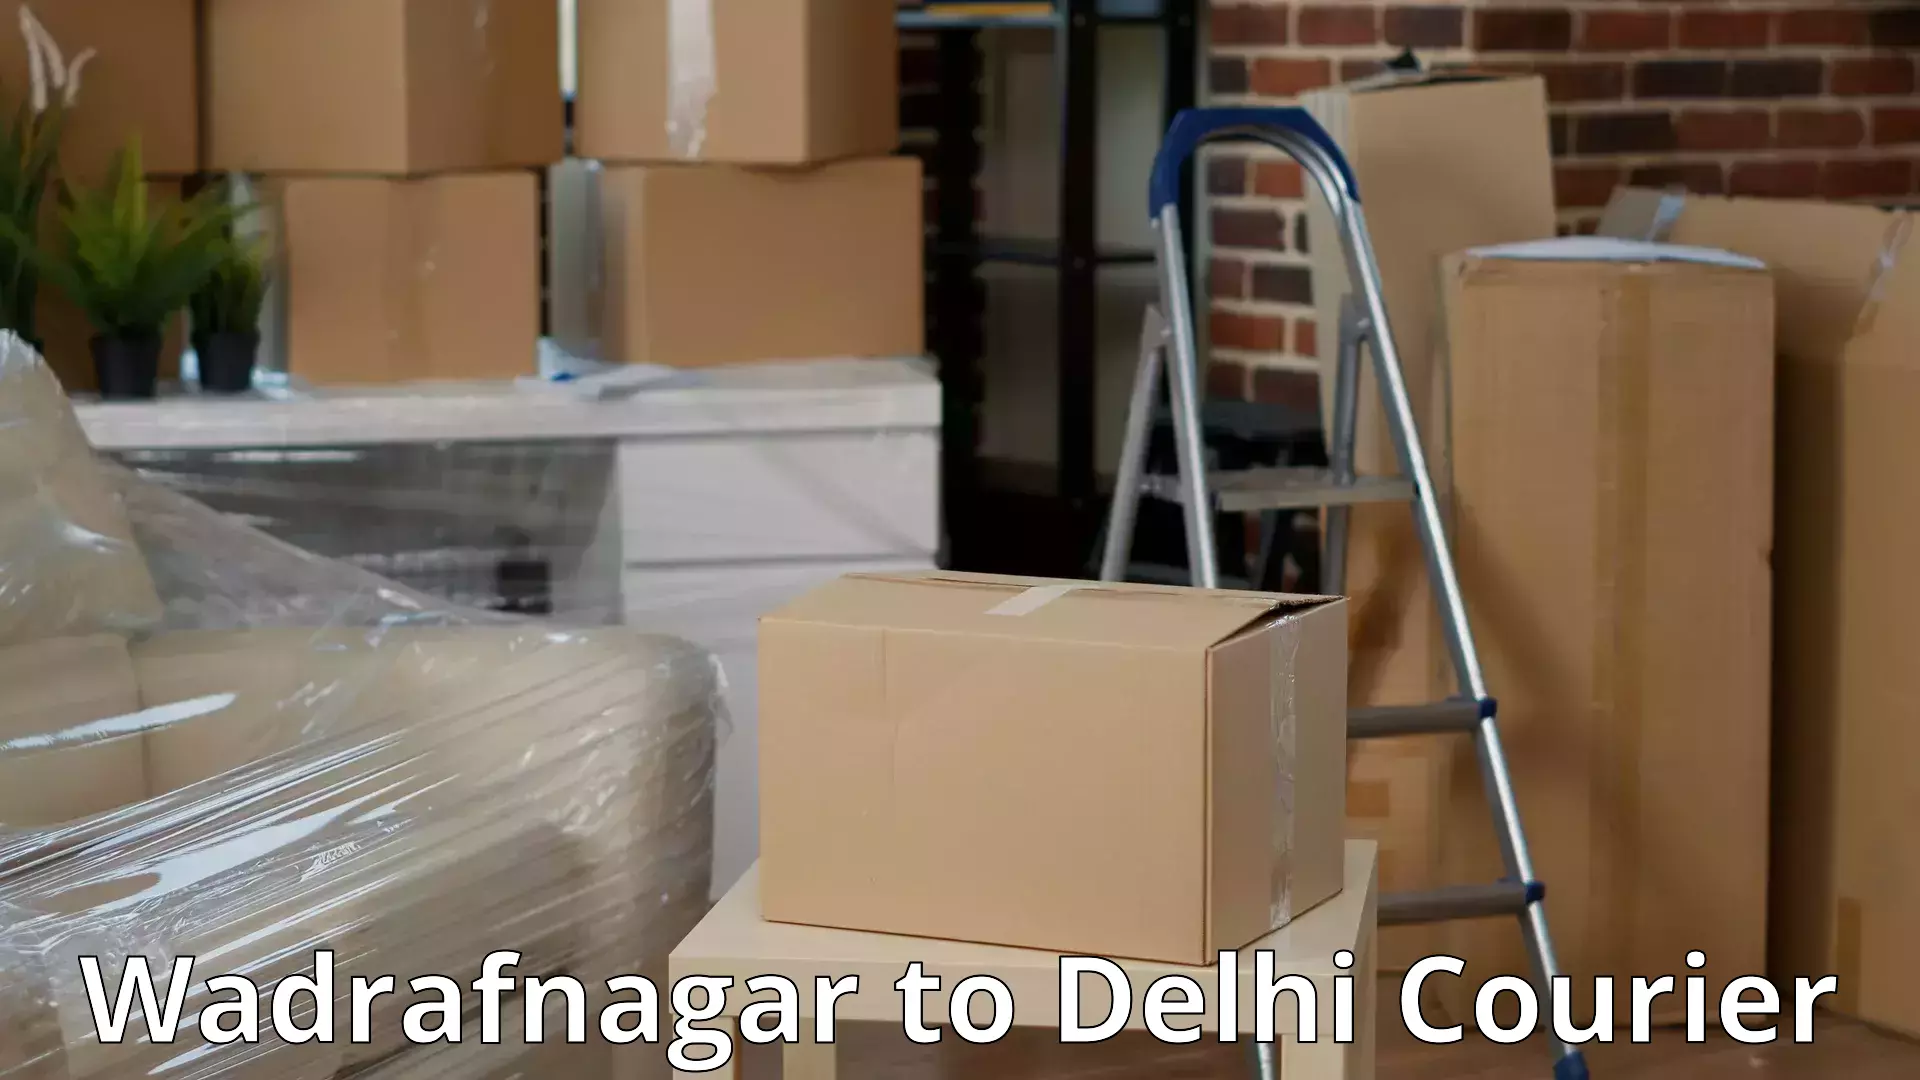 Cost-effective moving solutions Wadrafnagar to Krishna Nagar